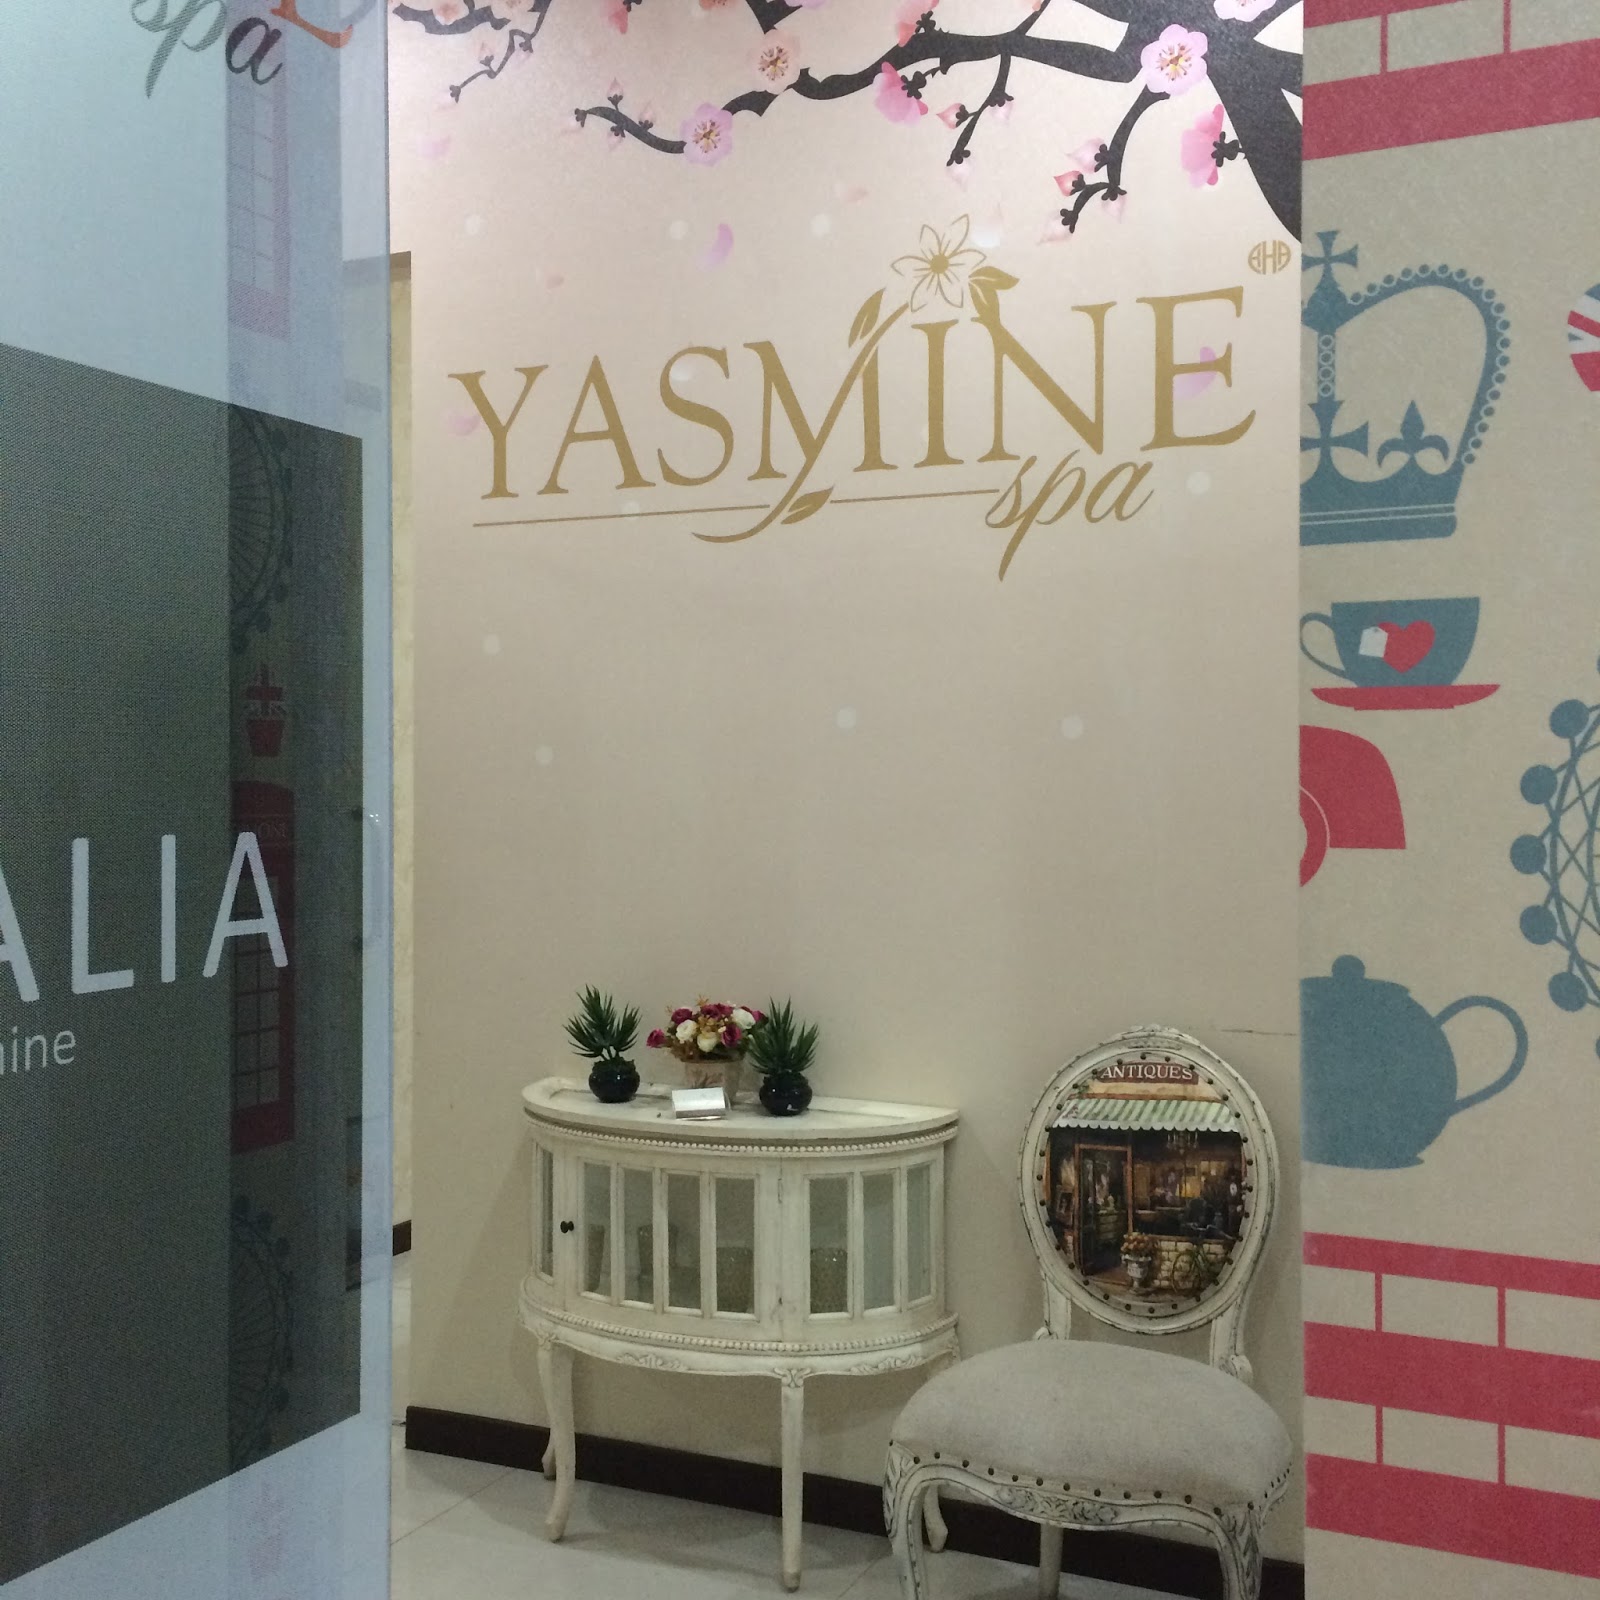 Mrs Ramadhaniar's story Pengalaman Spa di Semarang & Review Yasmine